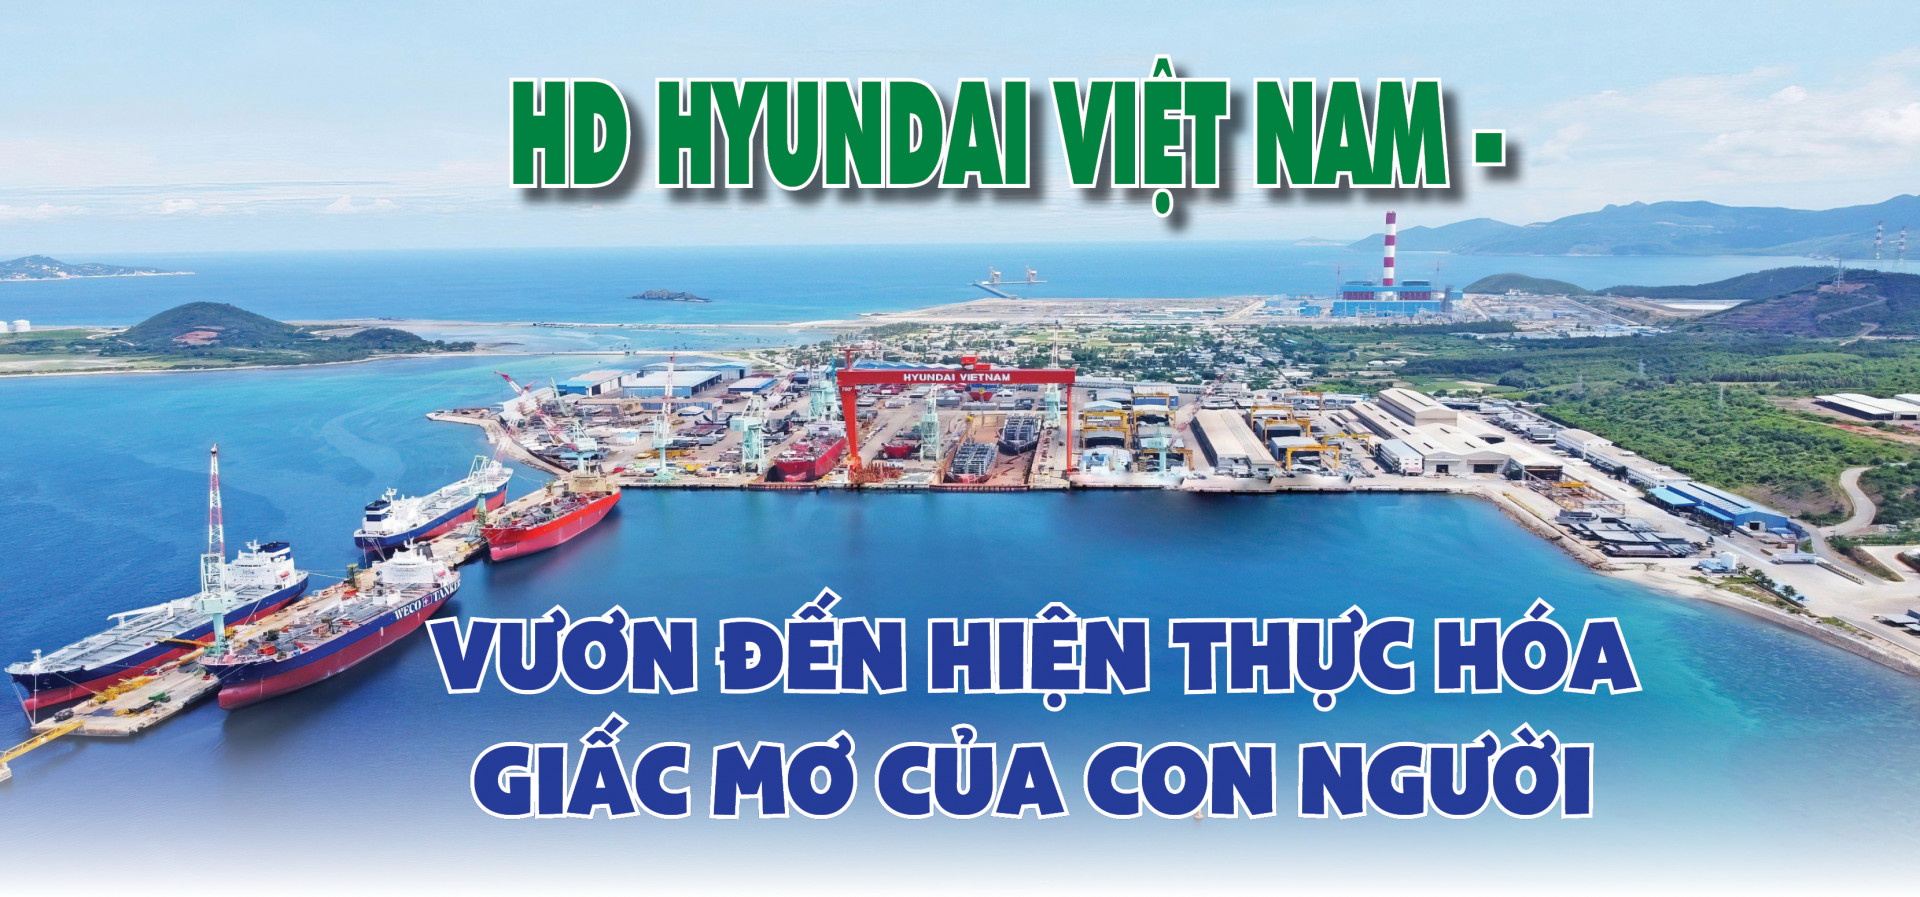 Emagazine: HD Hyundai Việt Nam - Vươn đến hiện thực hóa giấc mơ của con người